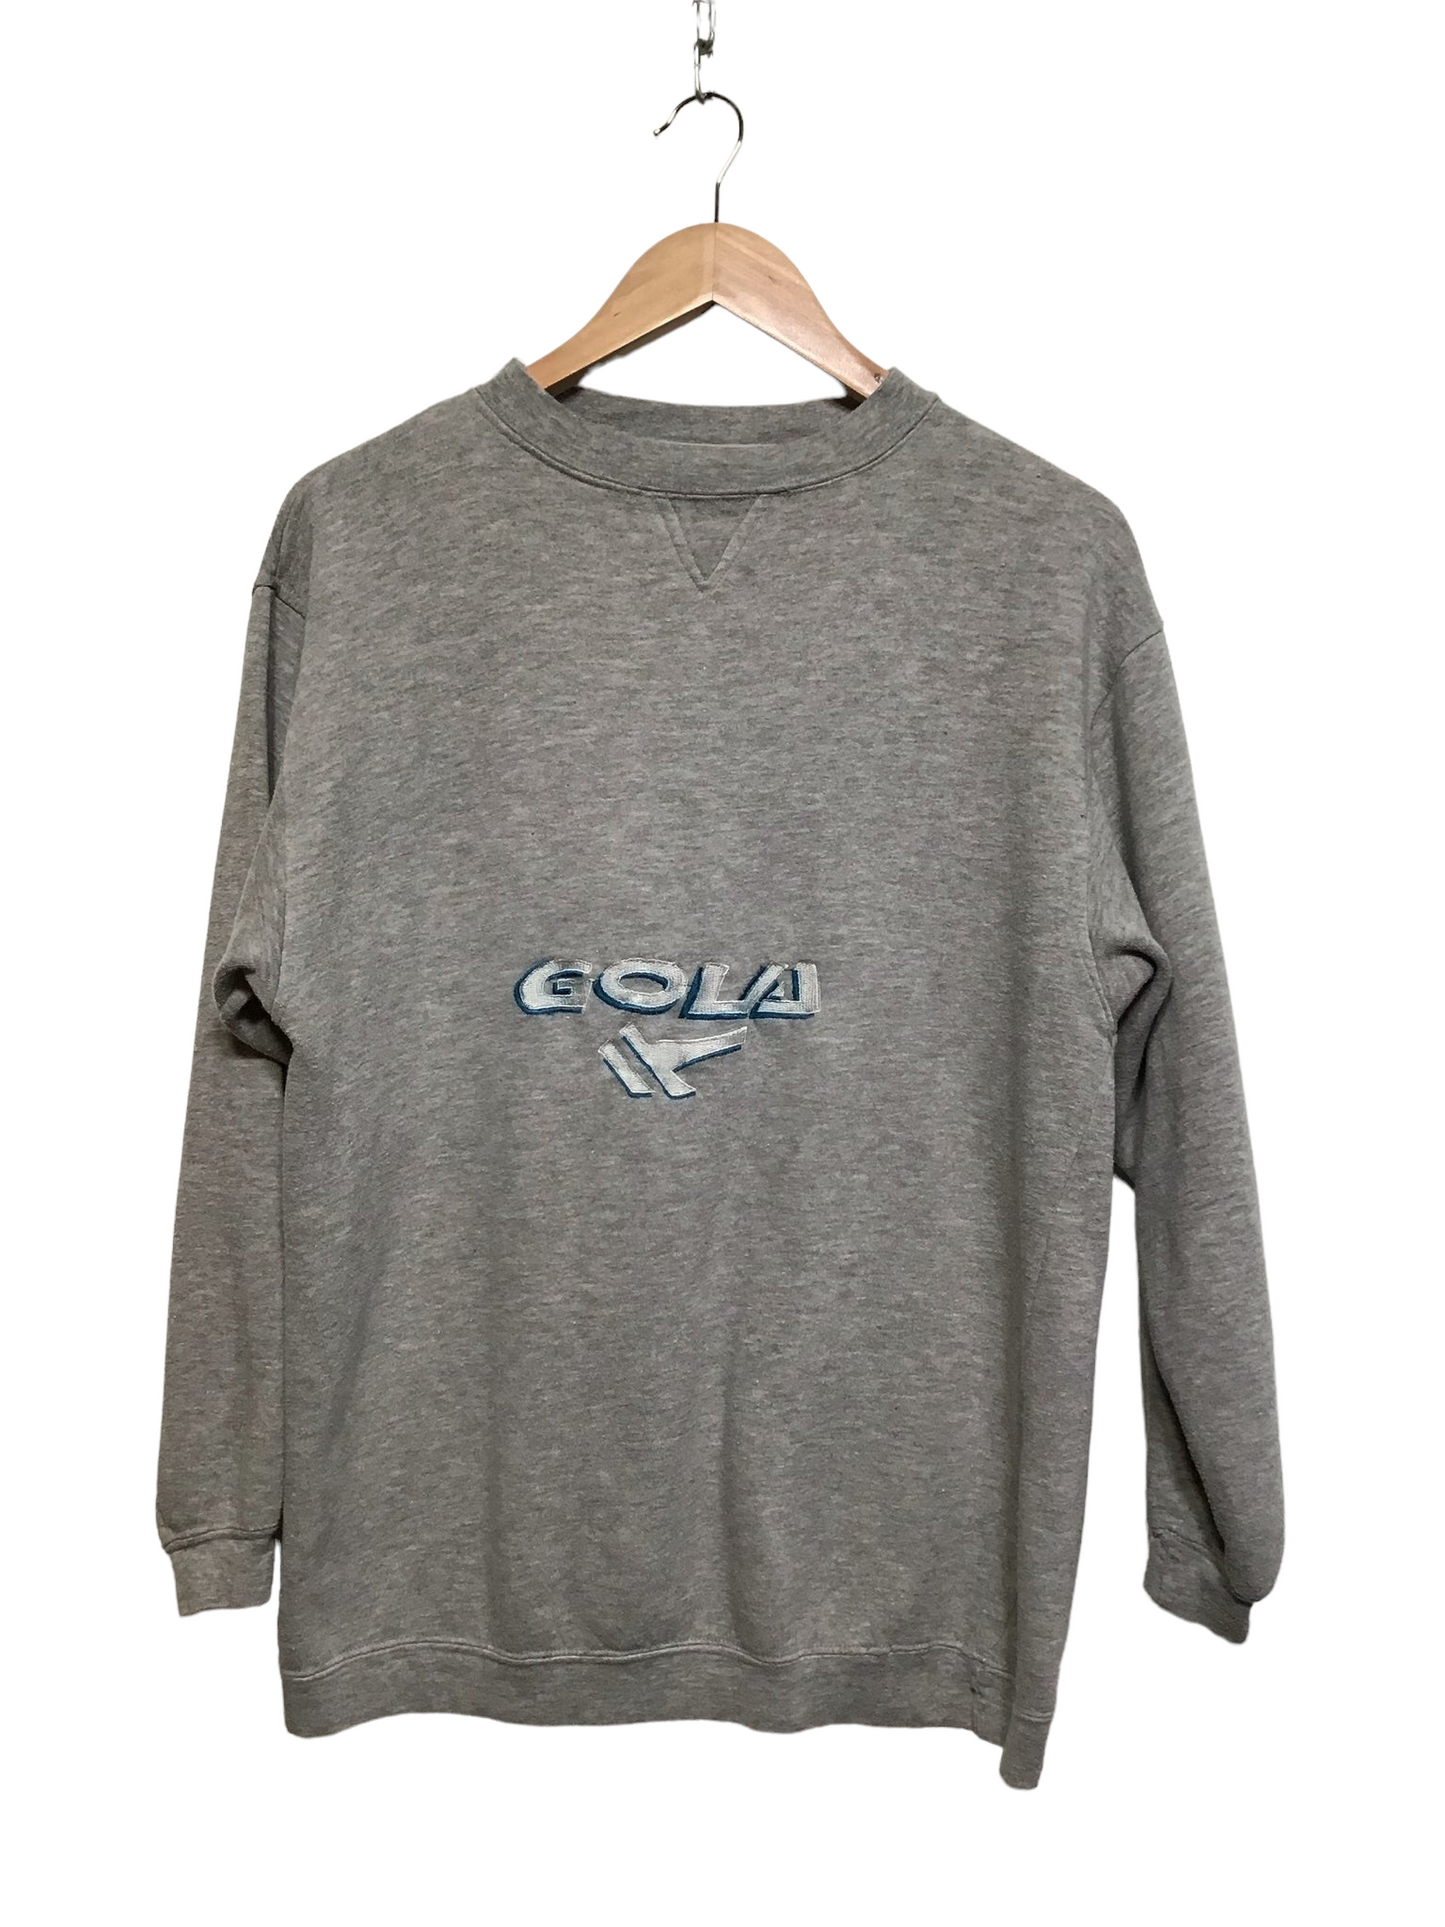 Gola Sweatshirt (Size S)